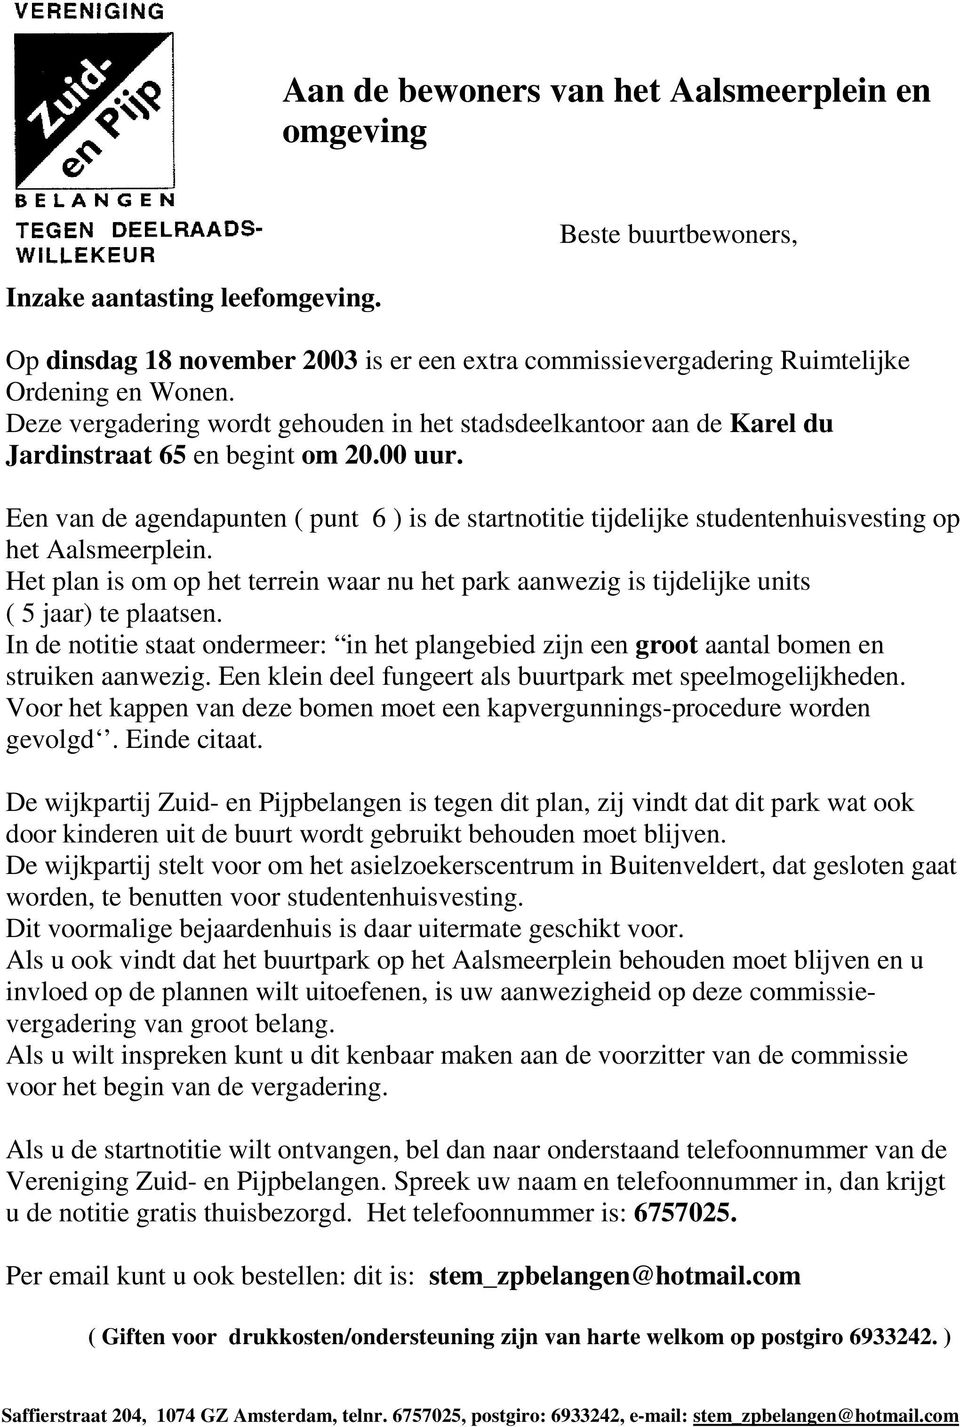 Een van de agendapunten ( punt 6 ) is de startnotitie tijdelijke studentenhuisvesting op het Aalsmeerplein.